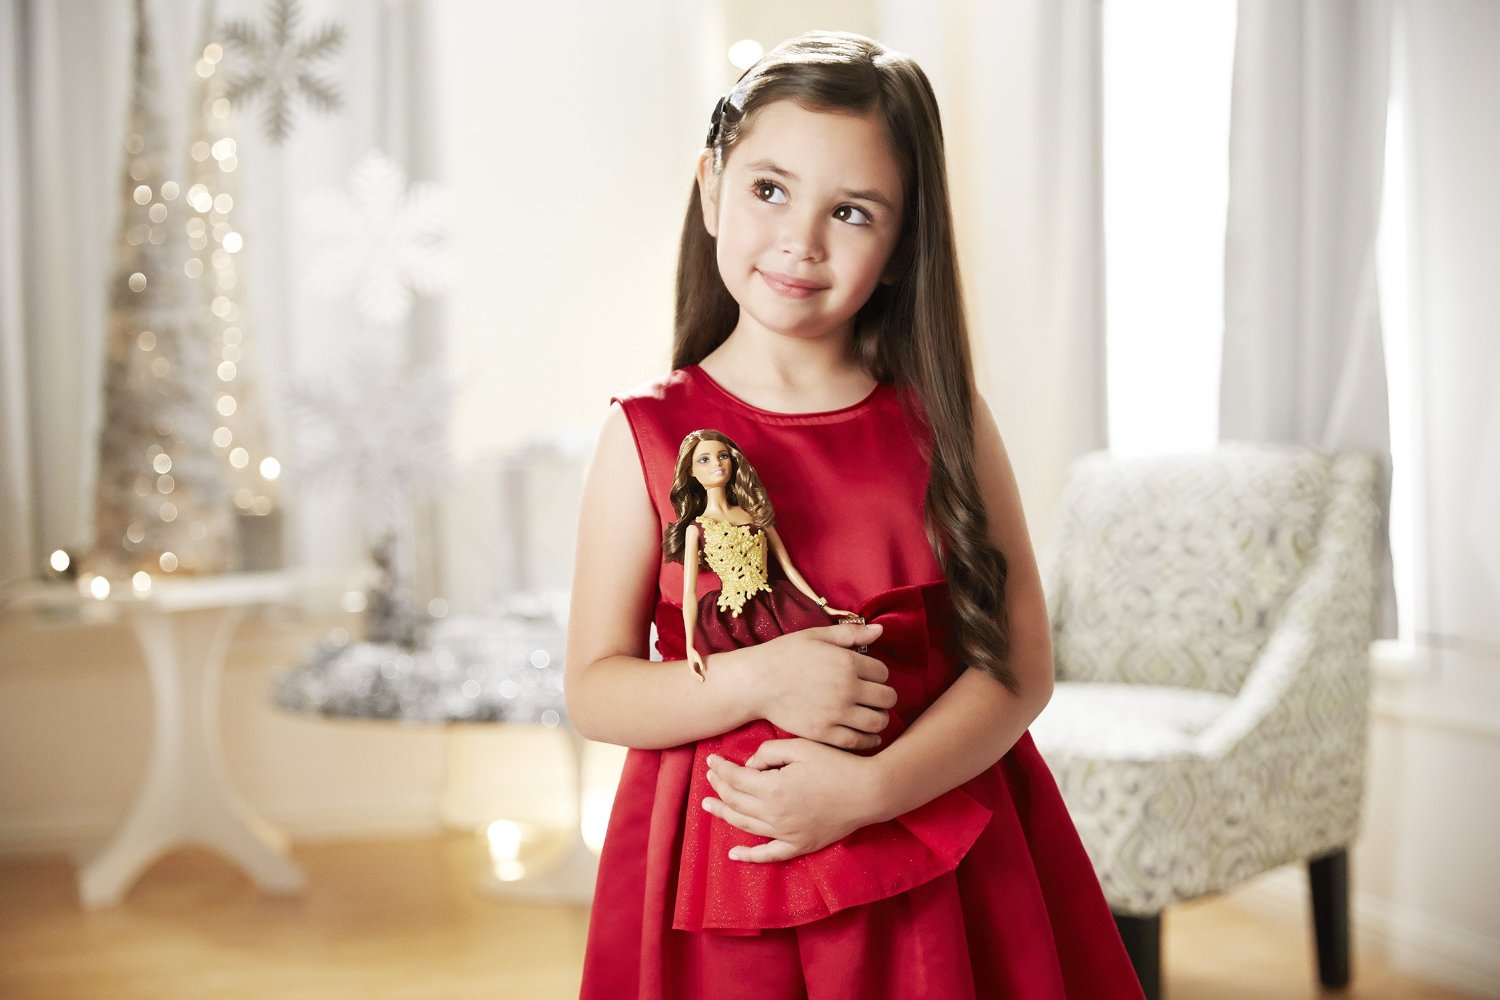 Кукла Barbie® в красном платье Праздничная  